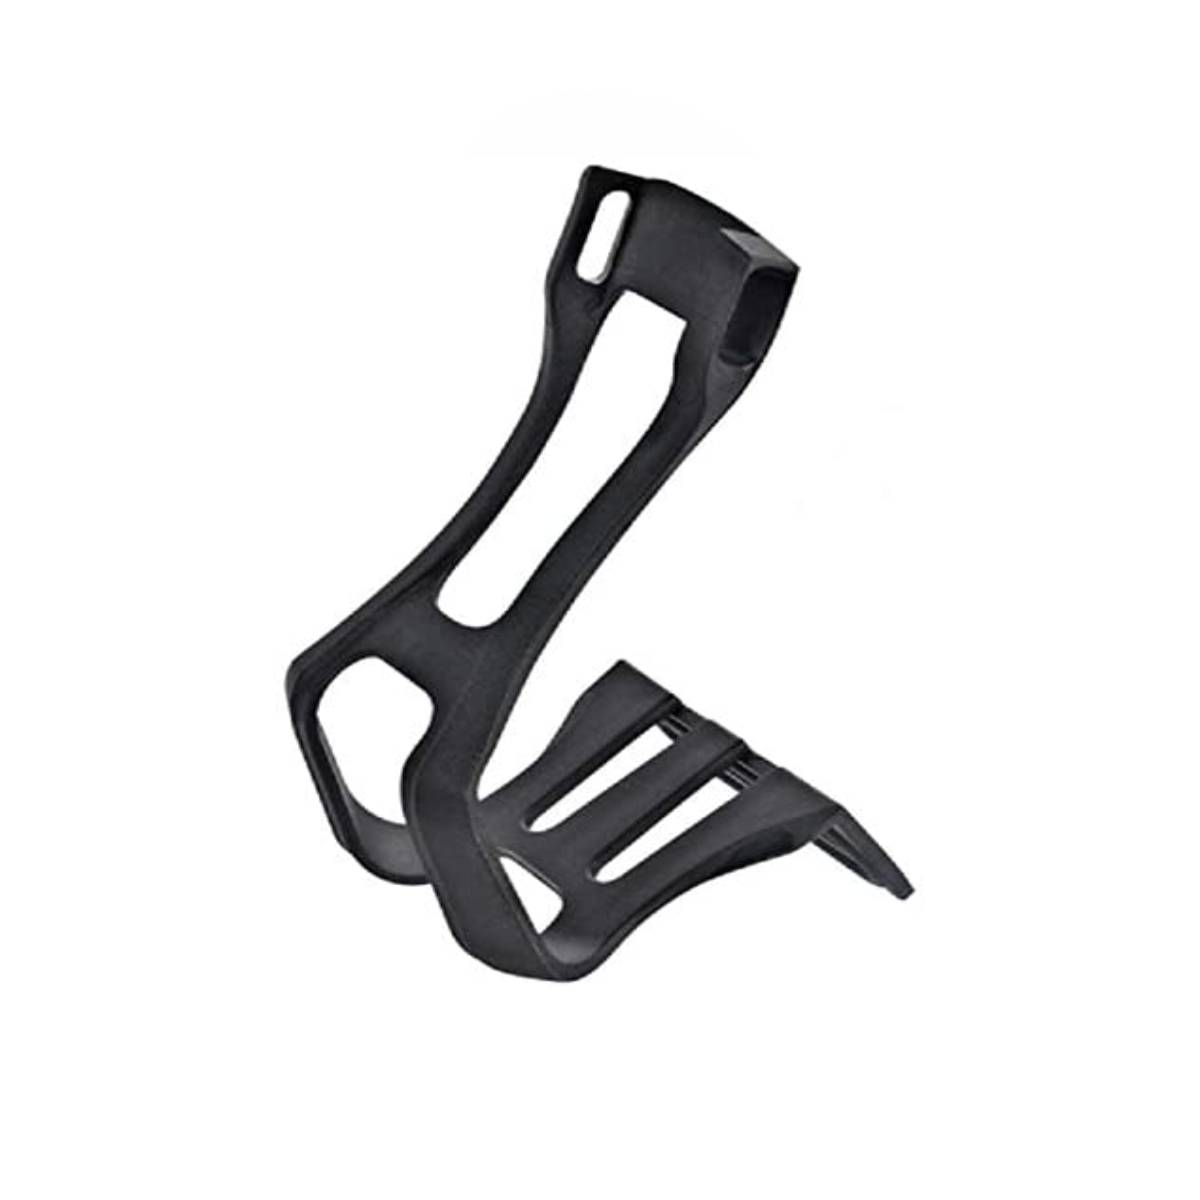 Evo  e-sport  toe-clips  straps not included